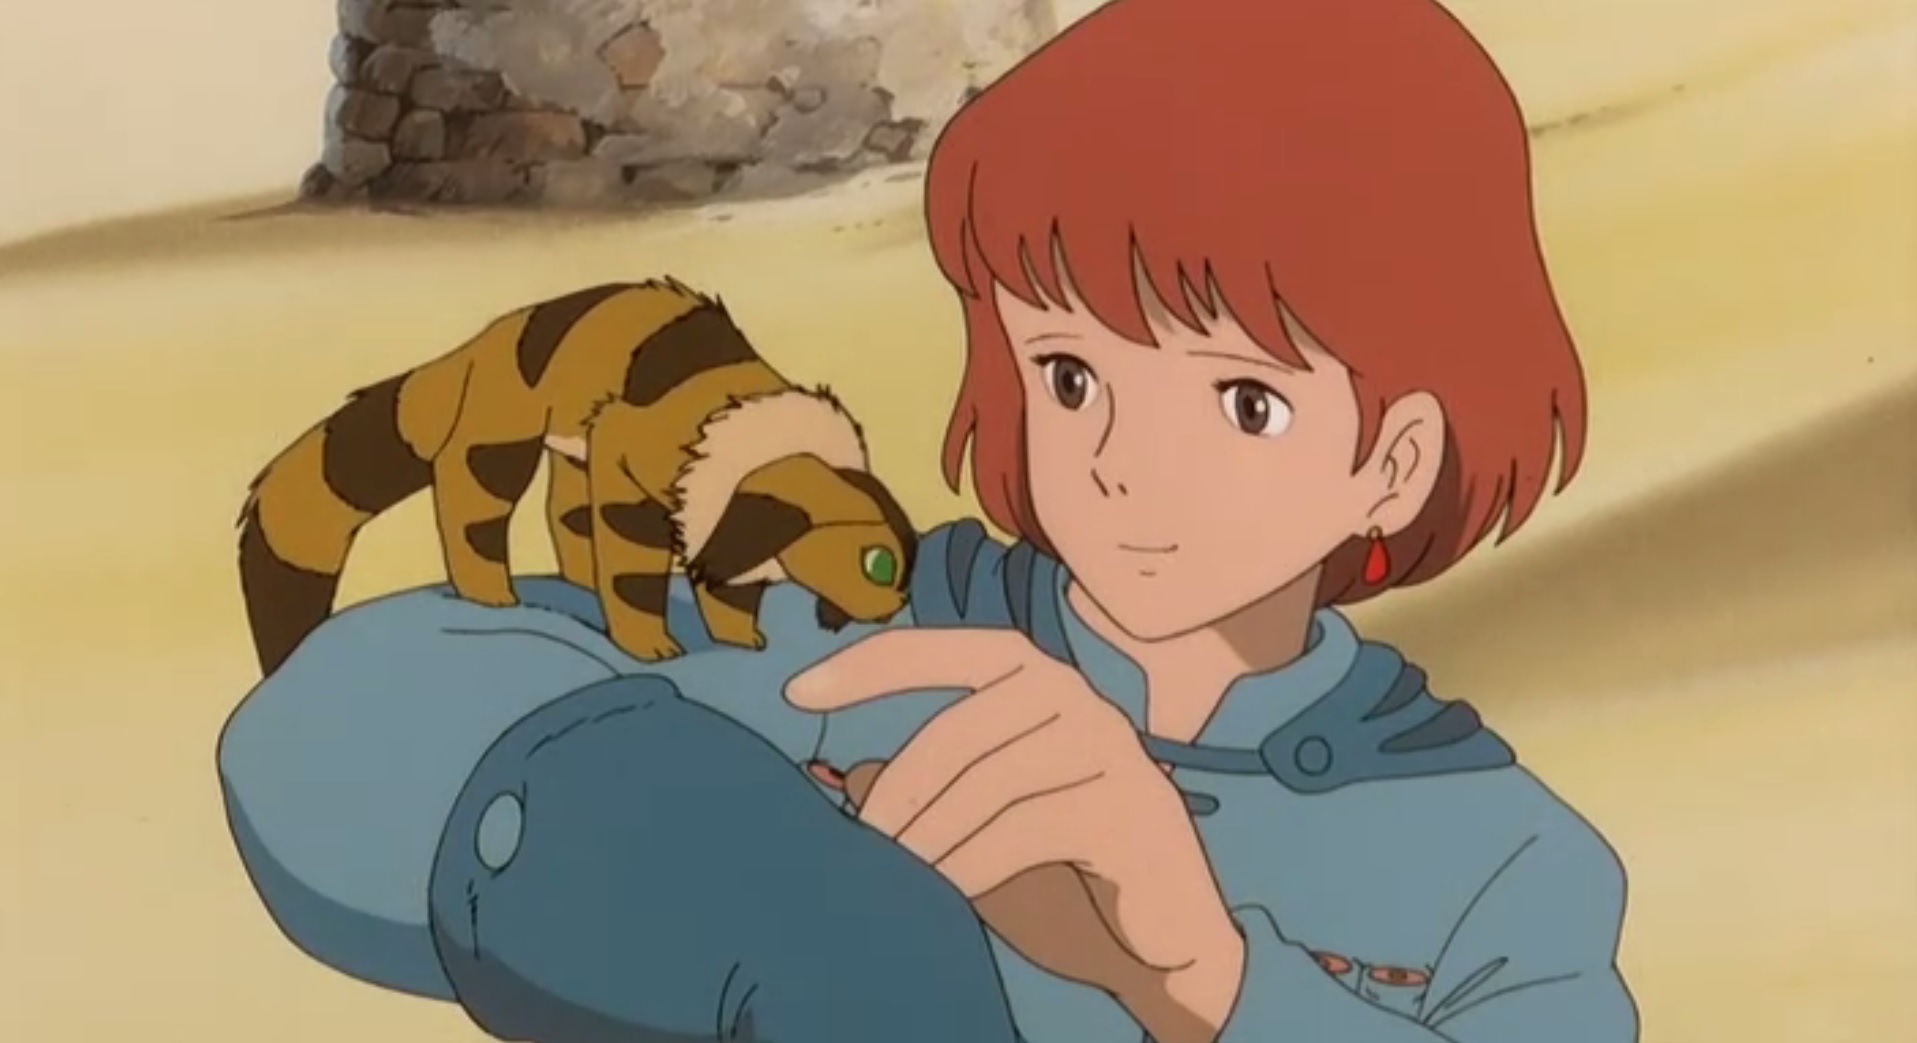 Nausicaä de Miyazaki : un film tourné vers le passé